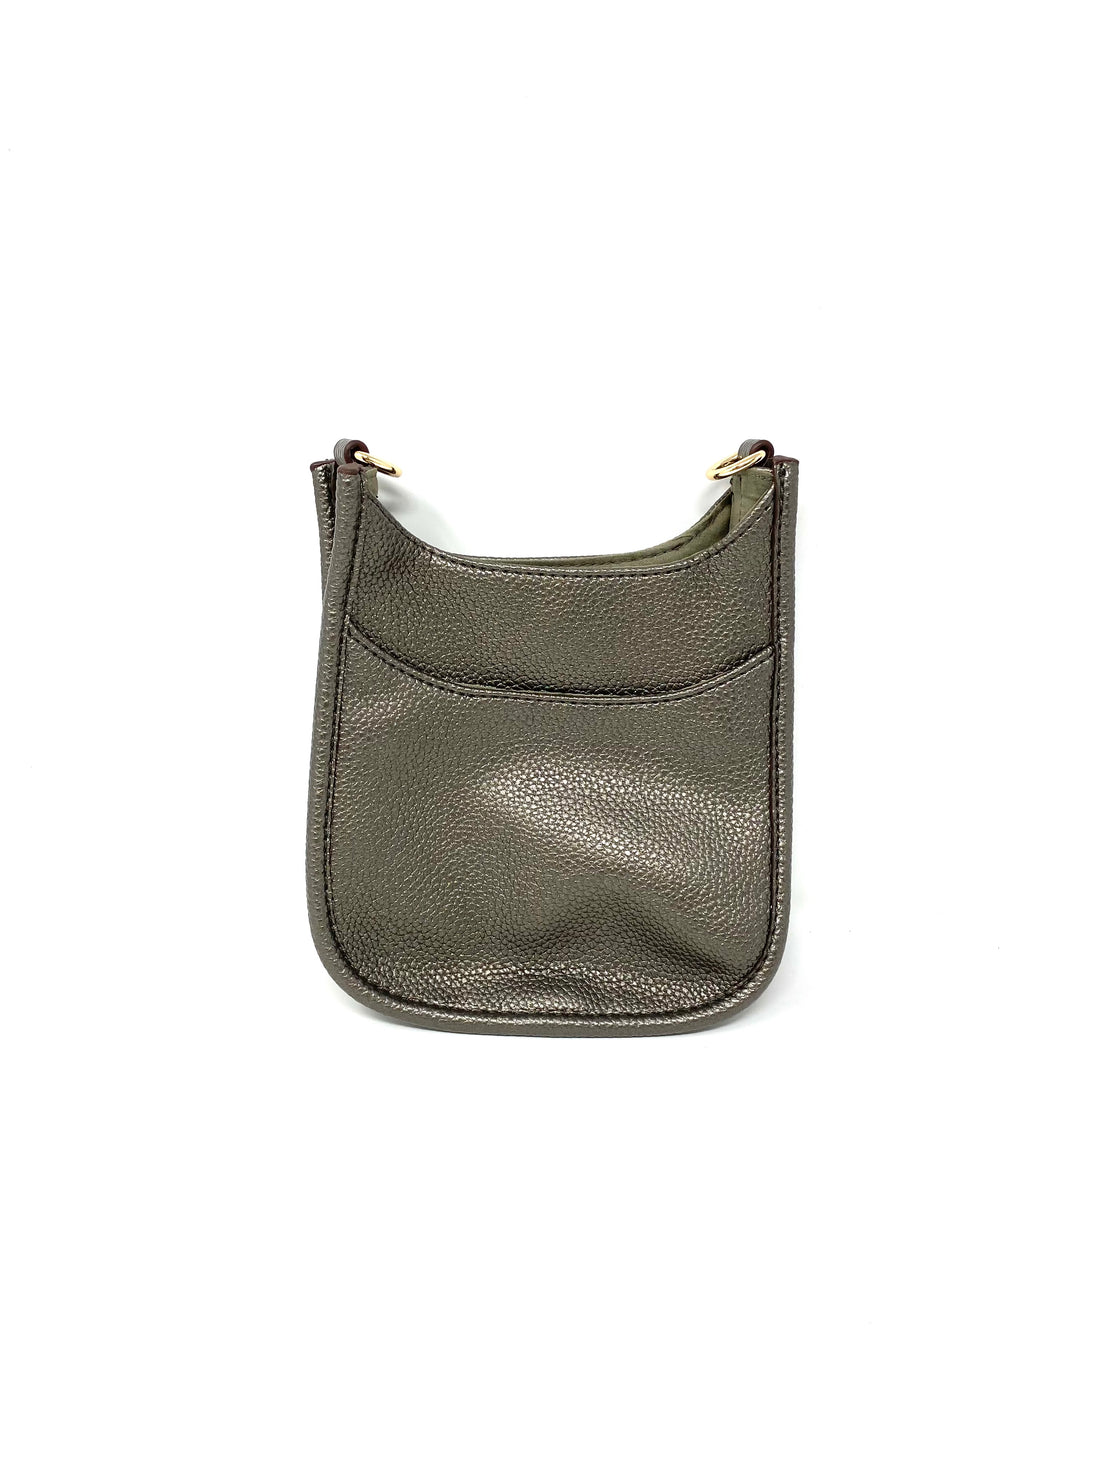 Mini Saddle Bag in Vegan Leather in Graphite